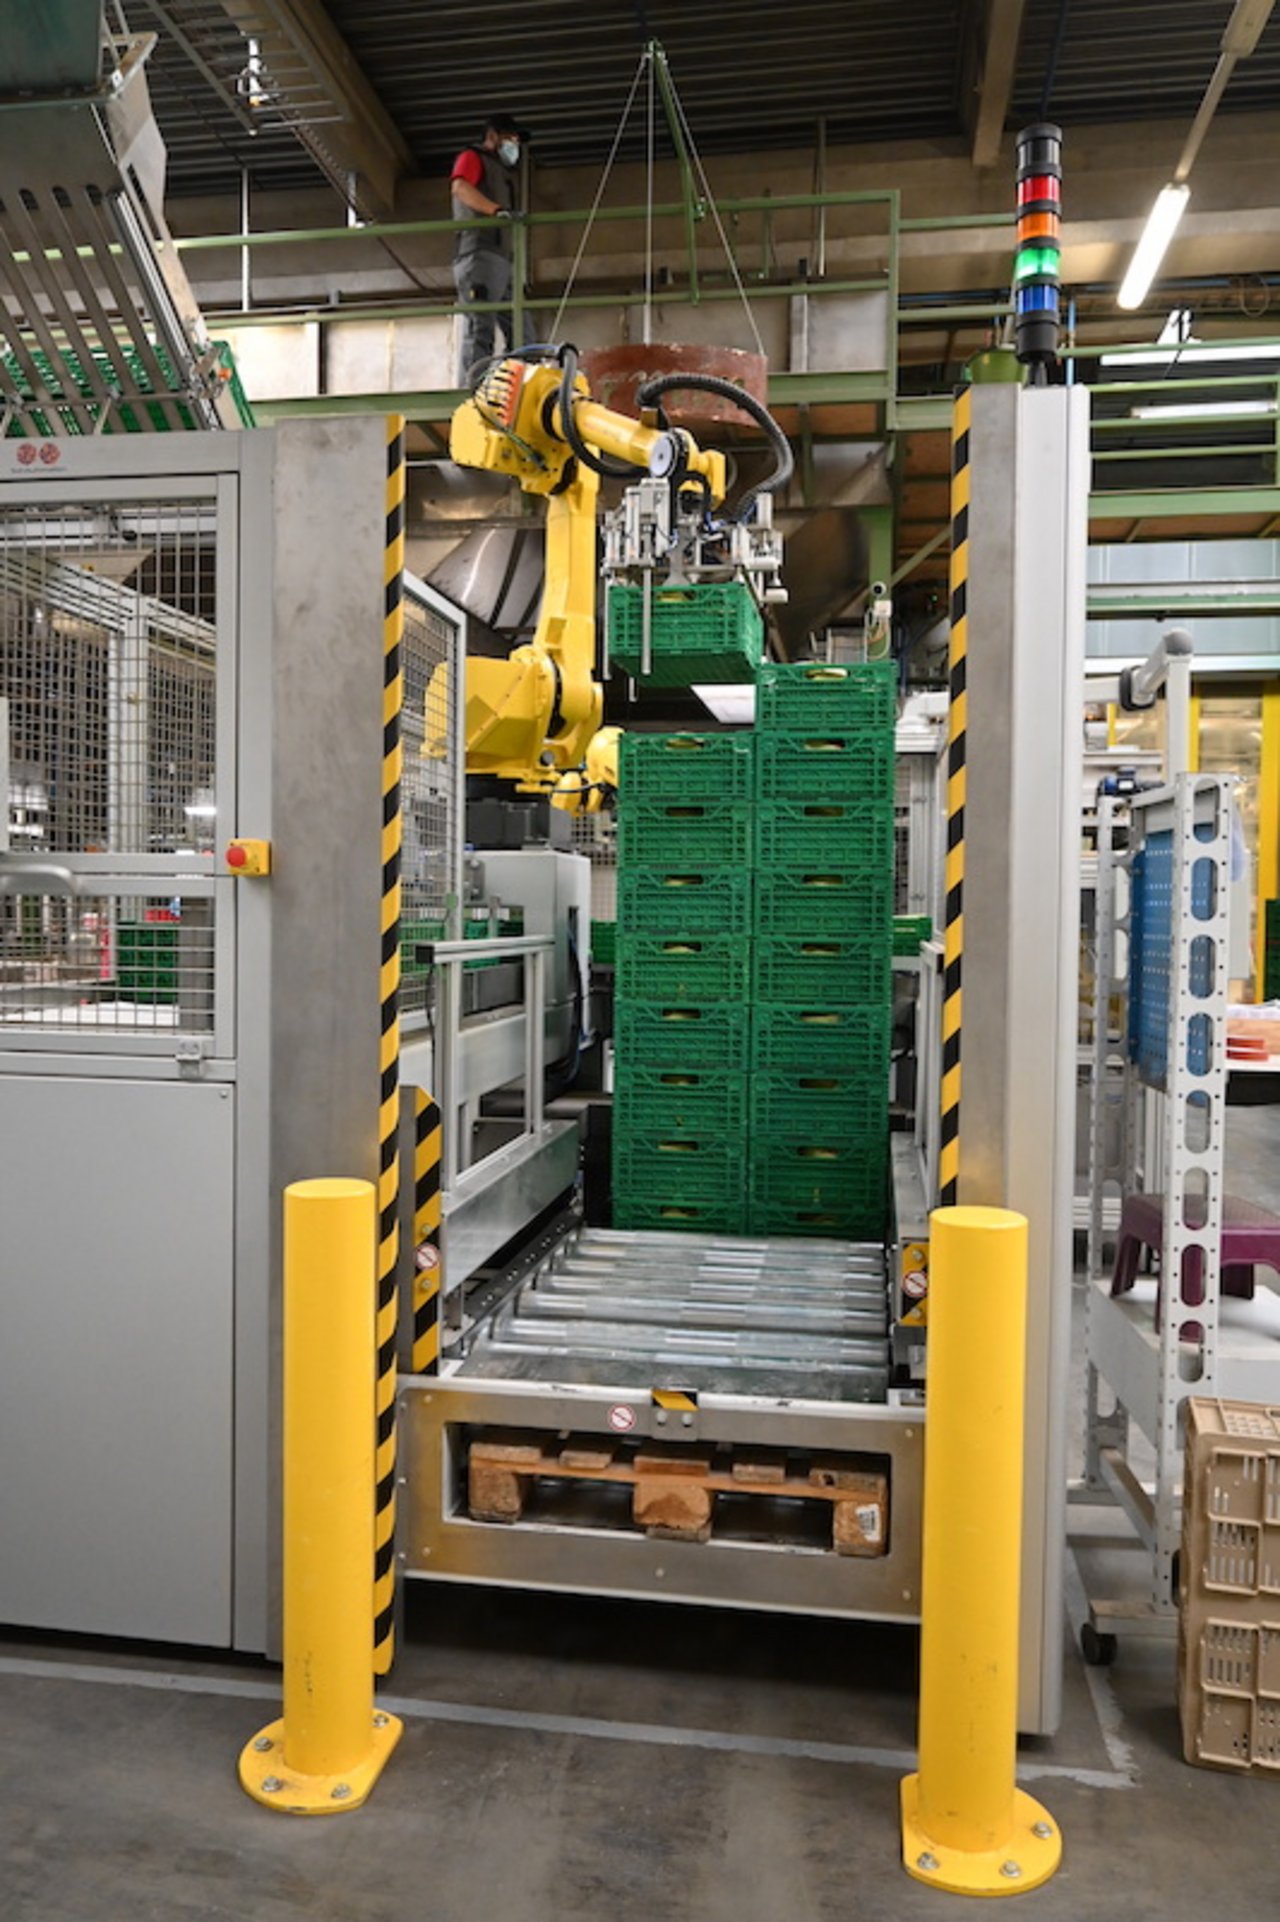 Der Roboter stapelt die vollen Ifco-Kisten aufeinander, bis zu 2,20m hoch. 